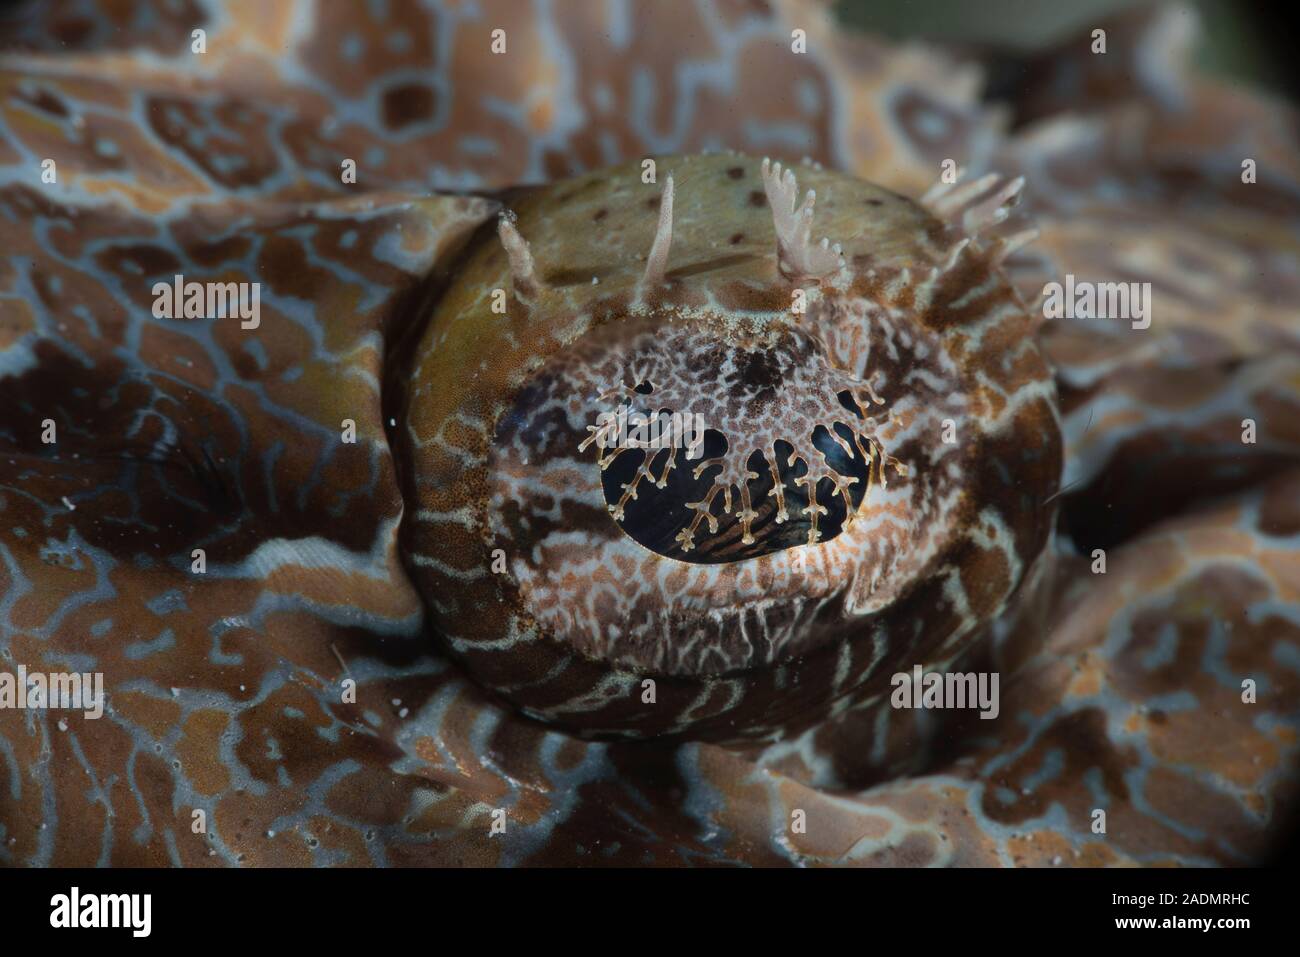 Fotografia subacquea di vita marina, creature marine Foto Stock